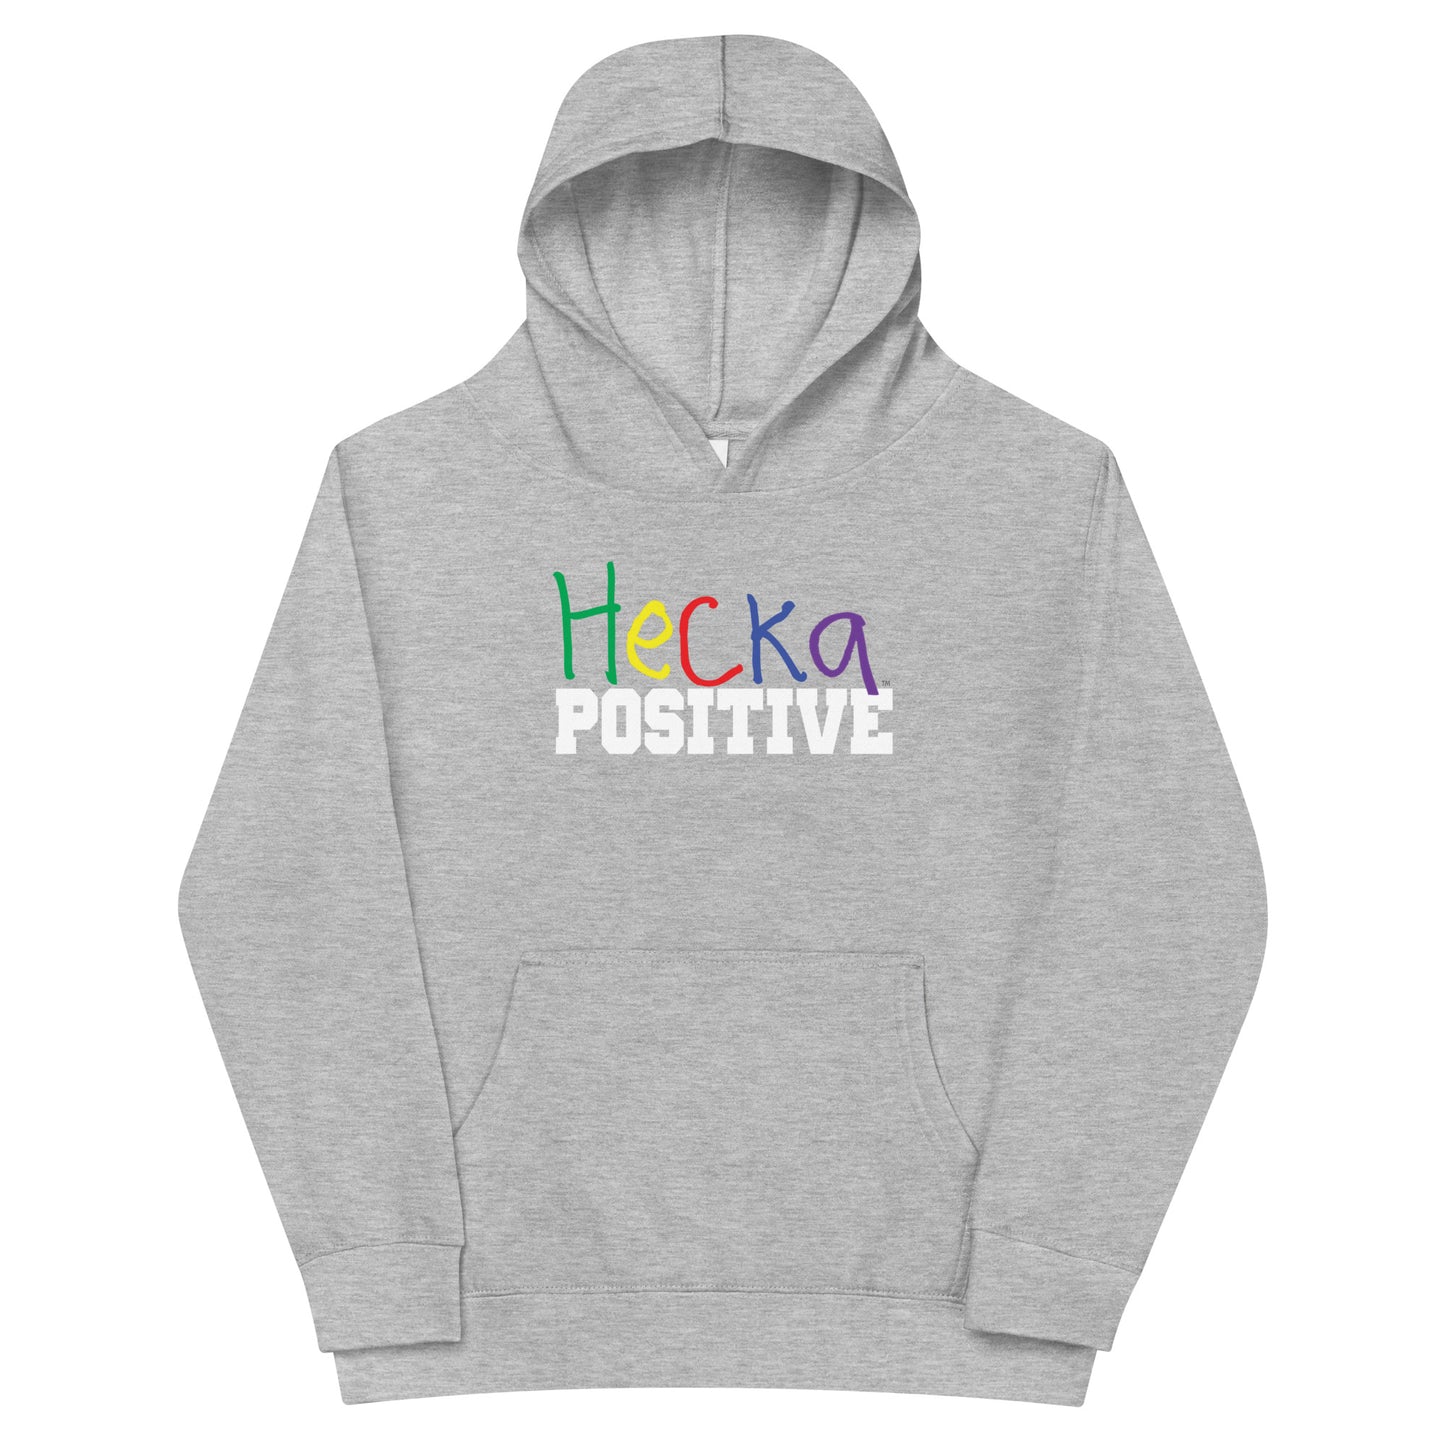 Hecka Positive Kids fleece hoodie